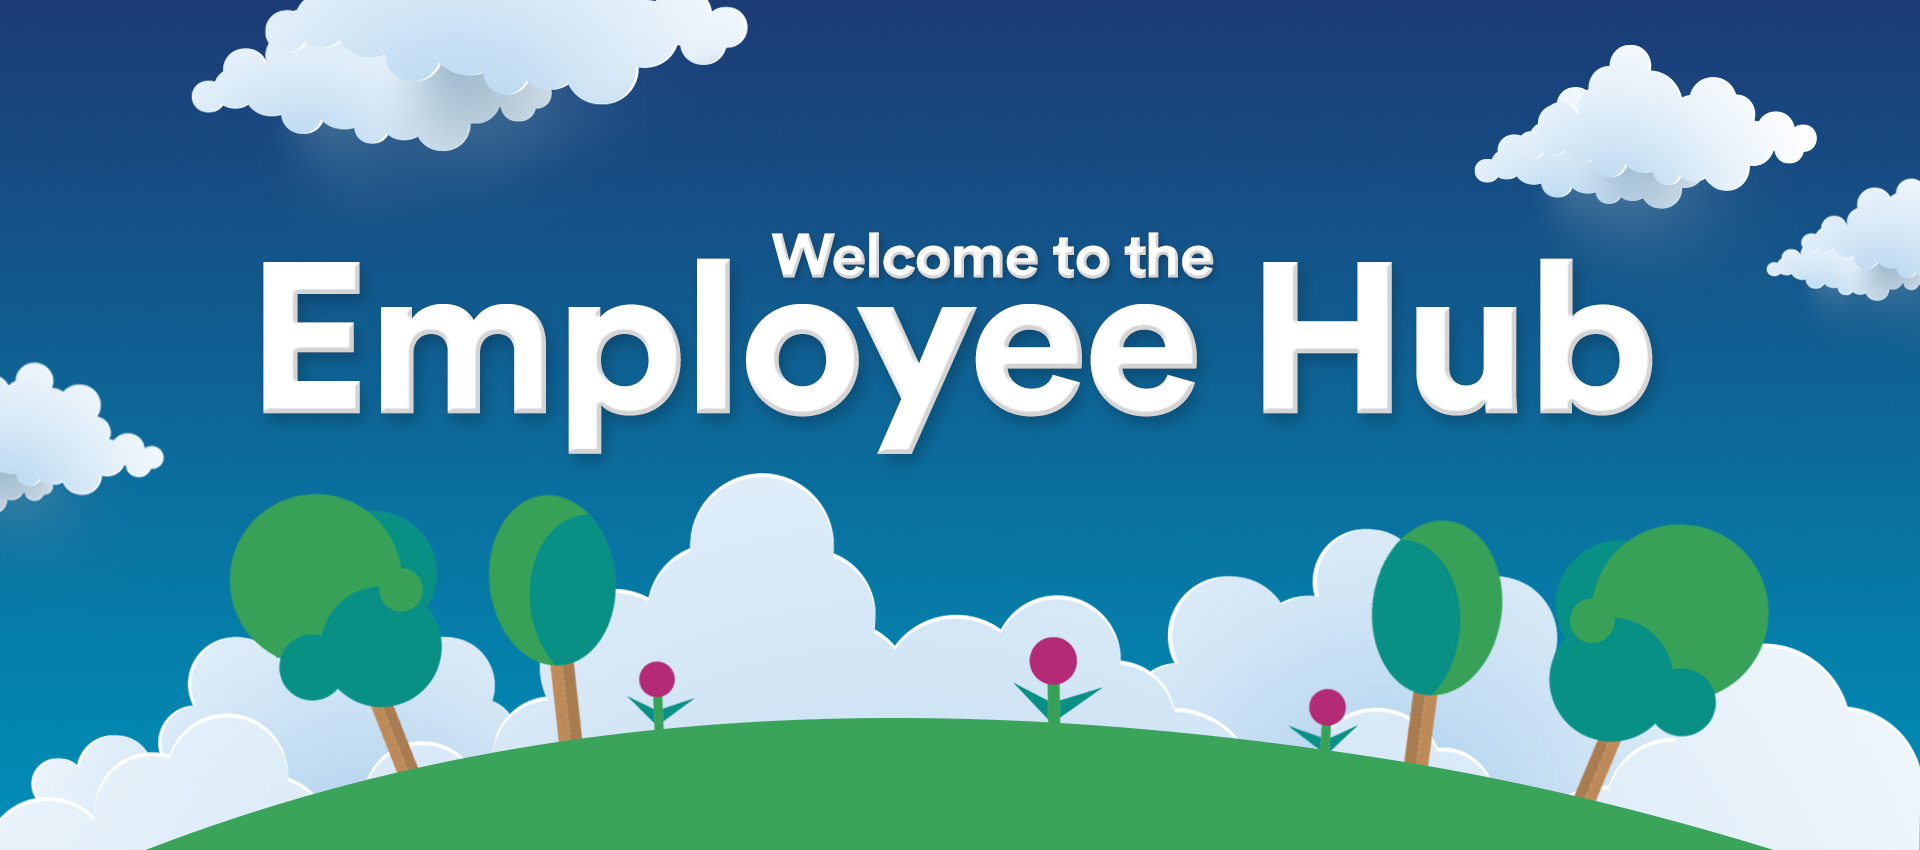 The Employee Hub